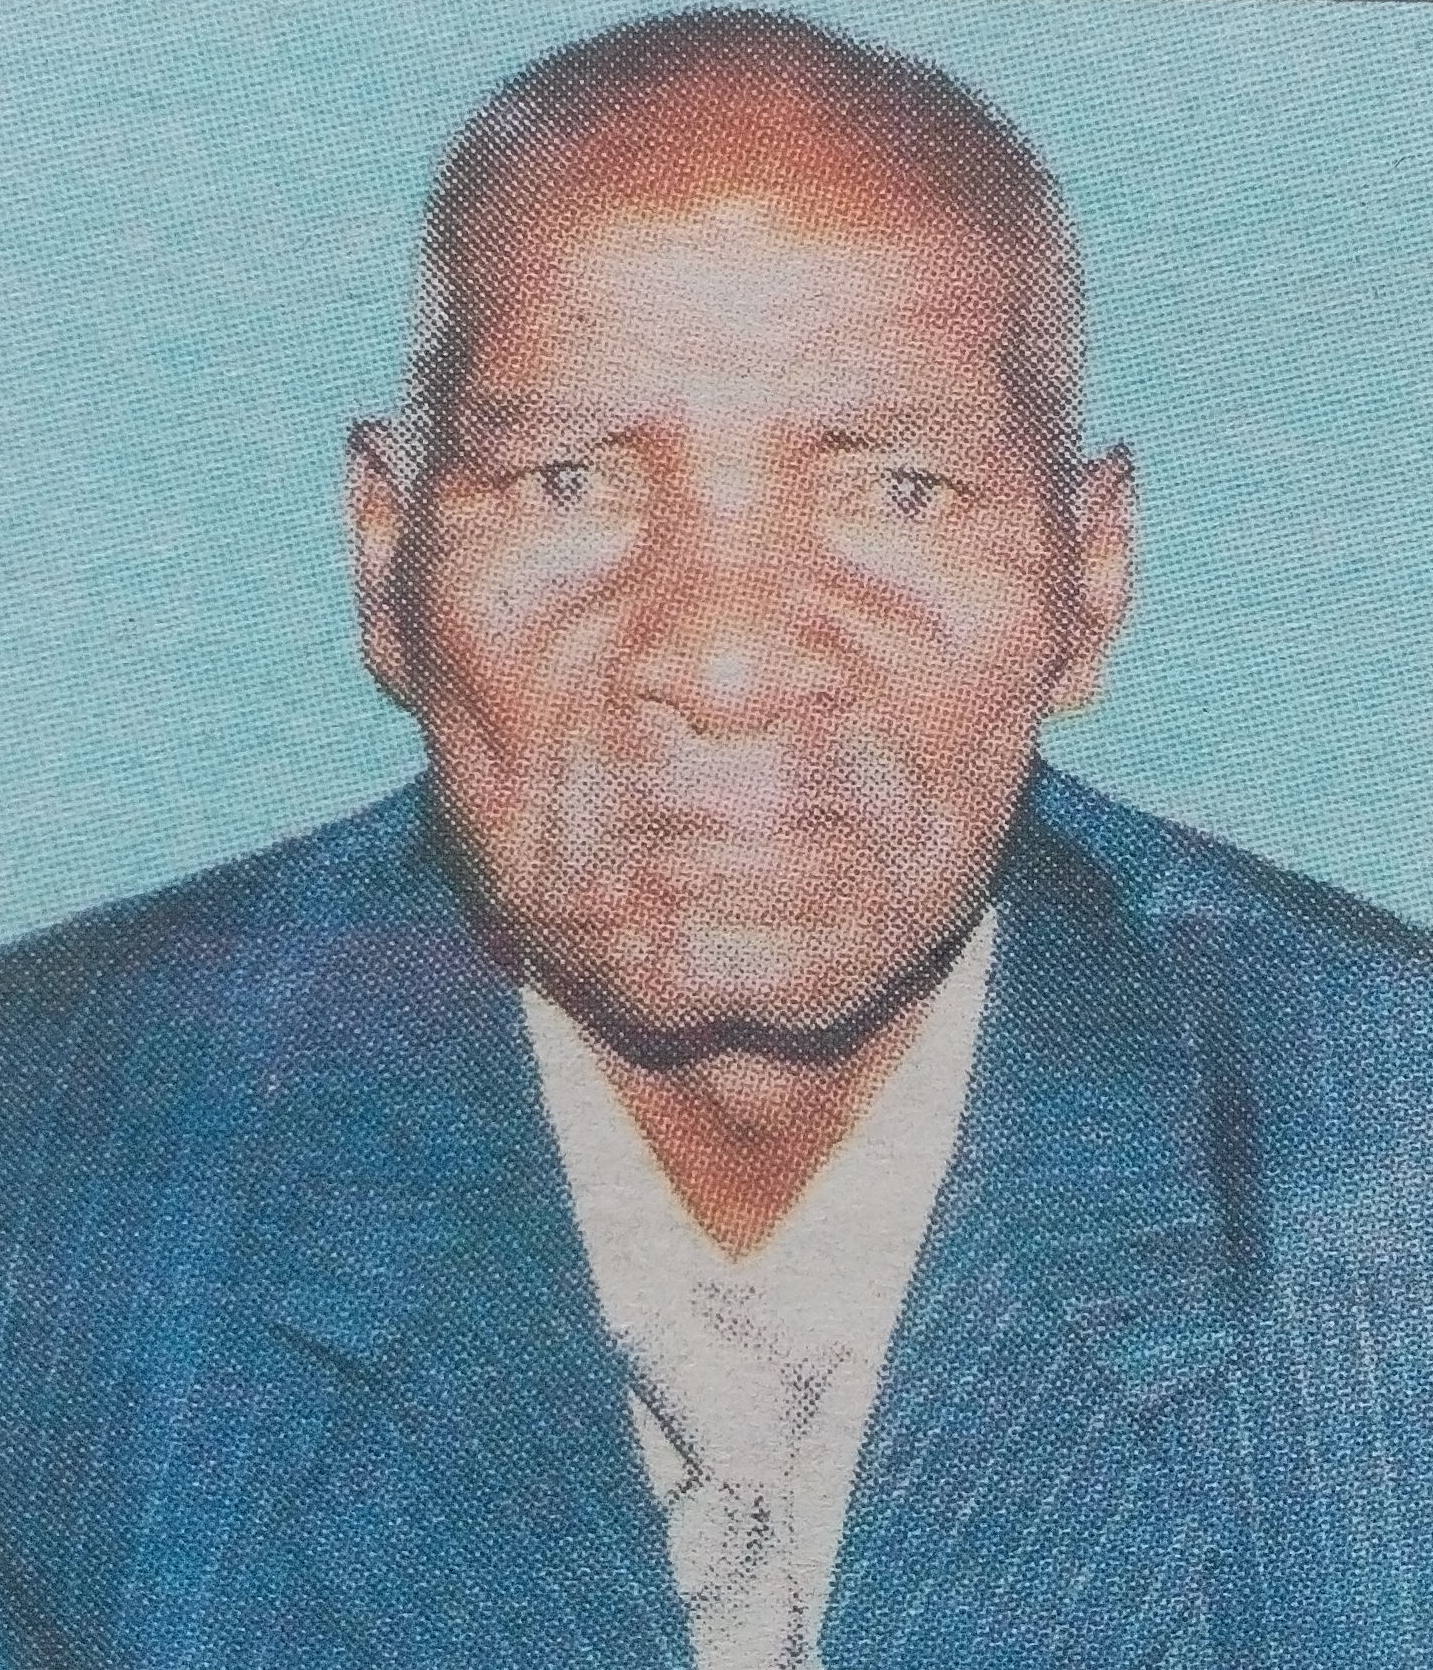 Obituary Image of Francis Kisyang'a Mutiso